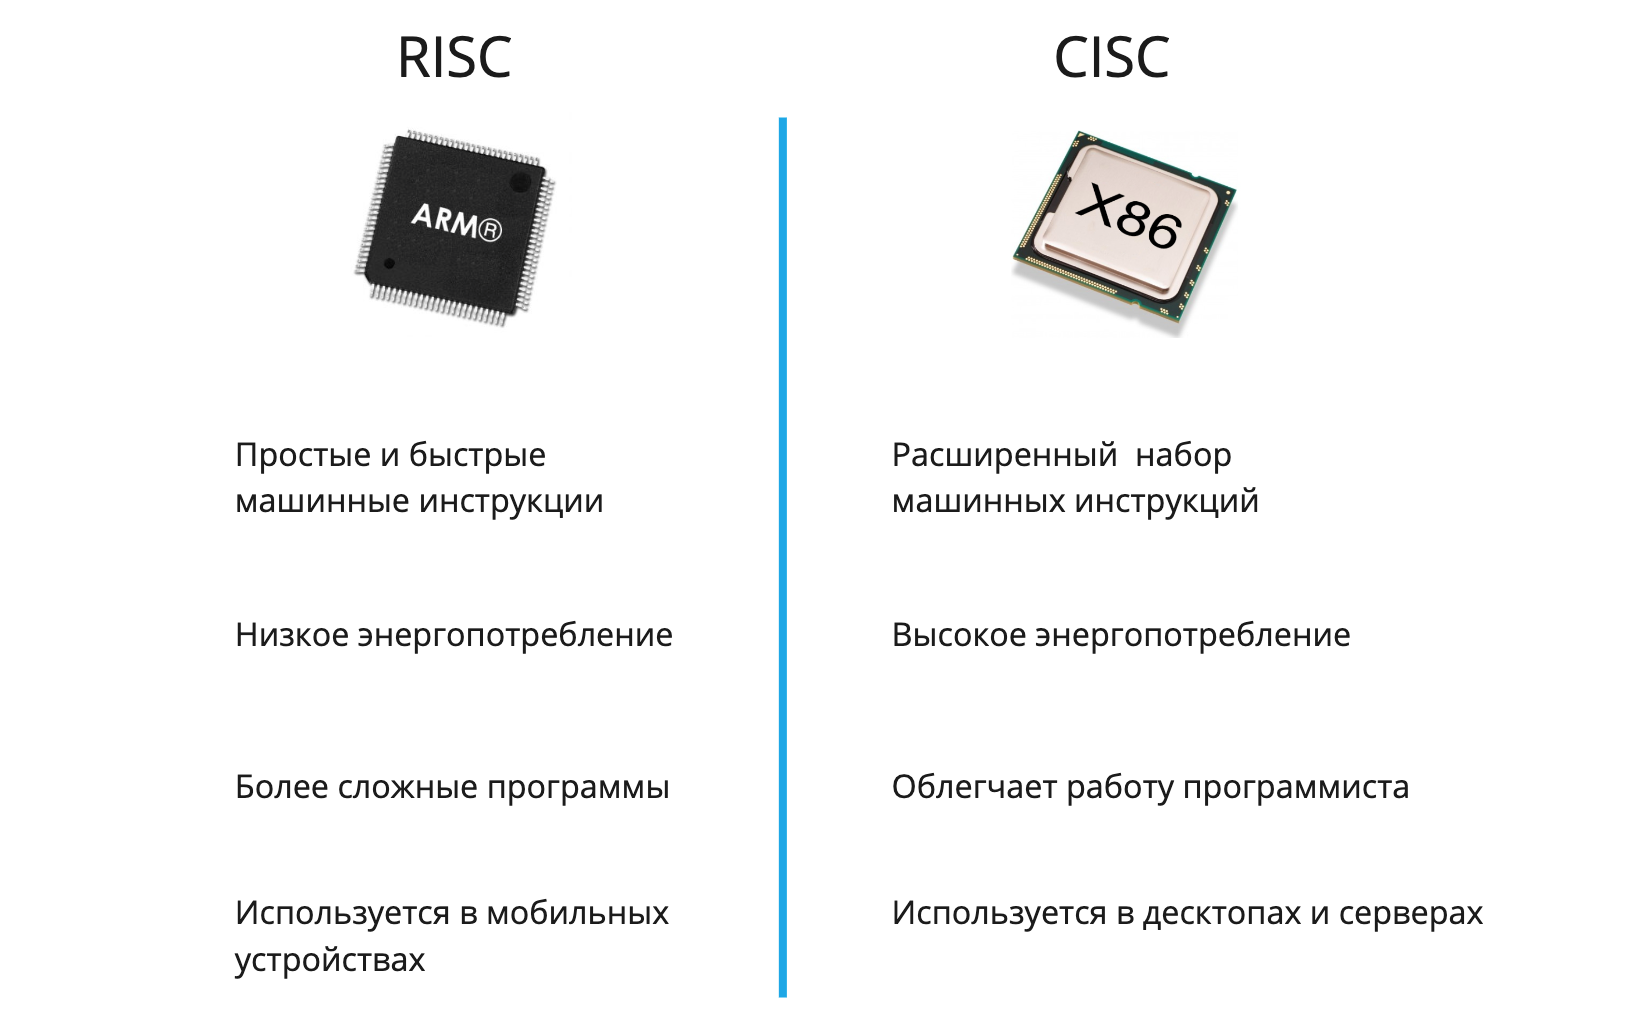 Архитектура процессоров RISC И CISC. Архитектуры микропроцессоров CISC, RISC, misc. Архитектуры процессоров RISC CISC Arm. RISC CISC архитектура различия.